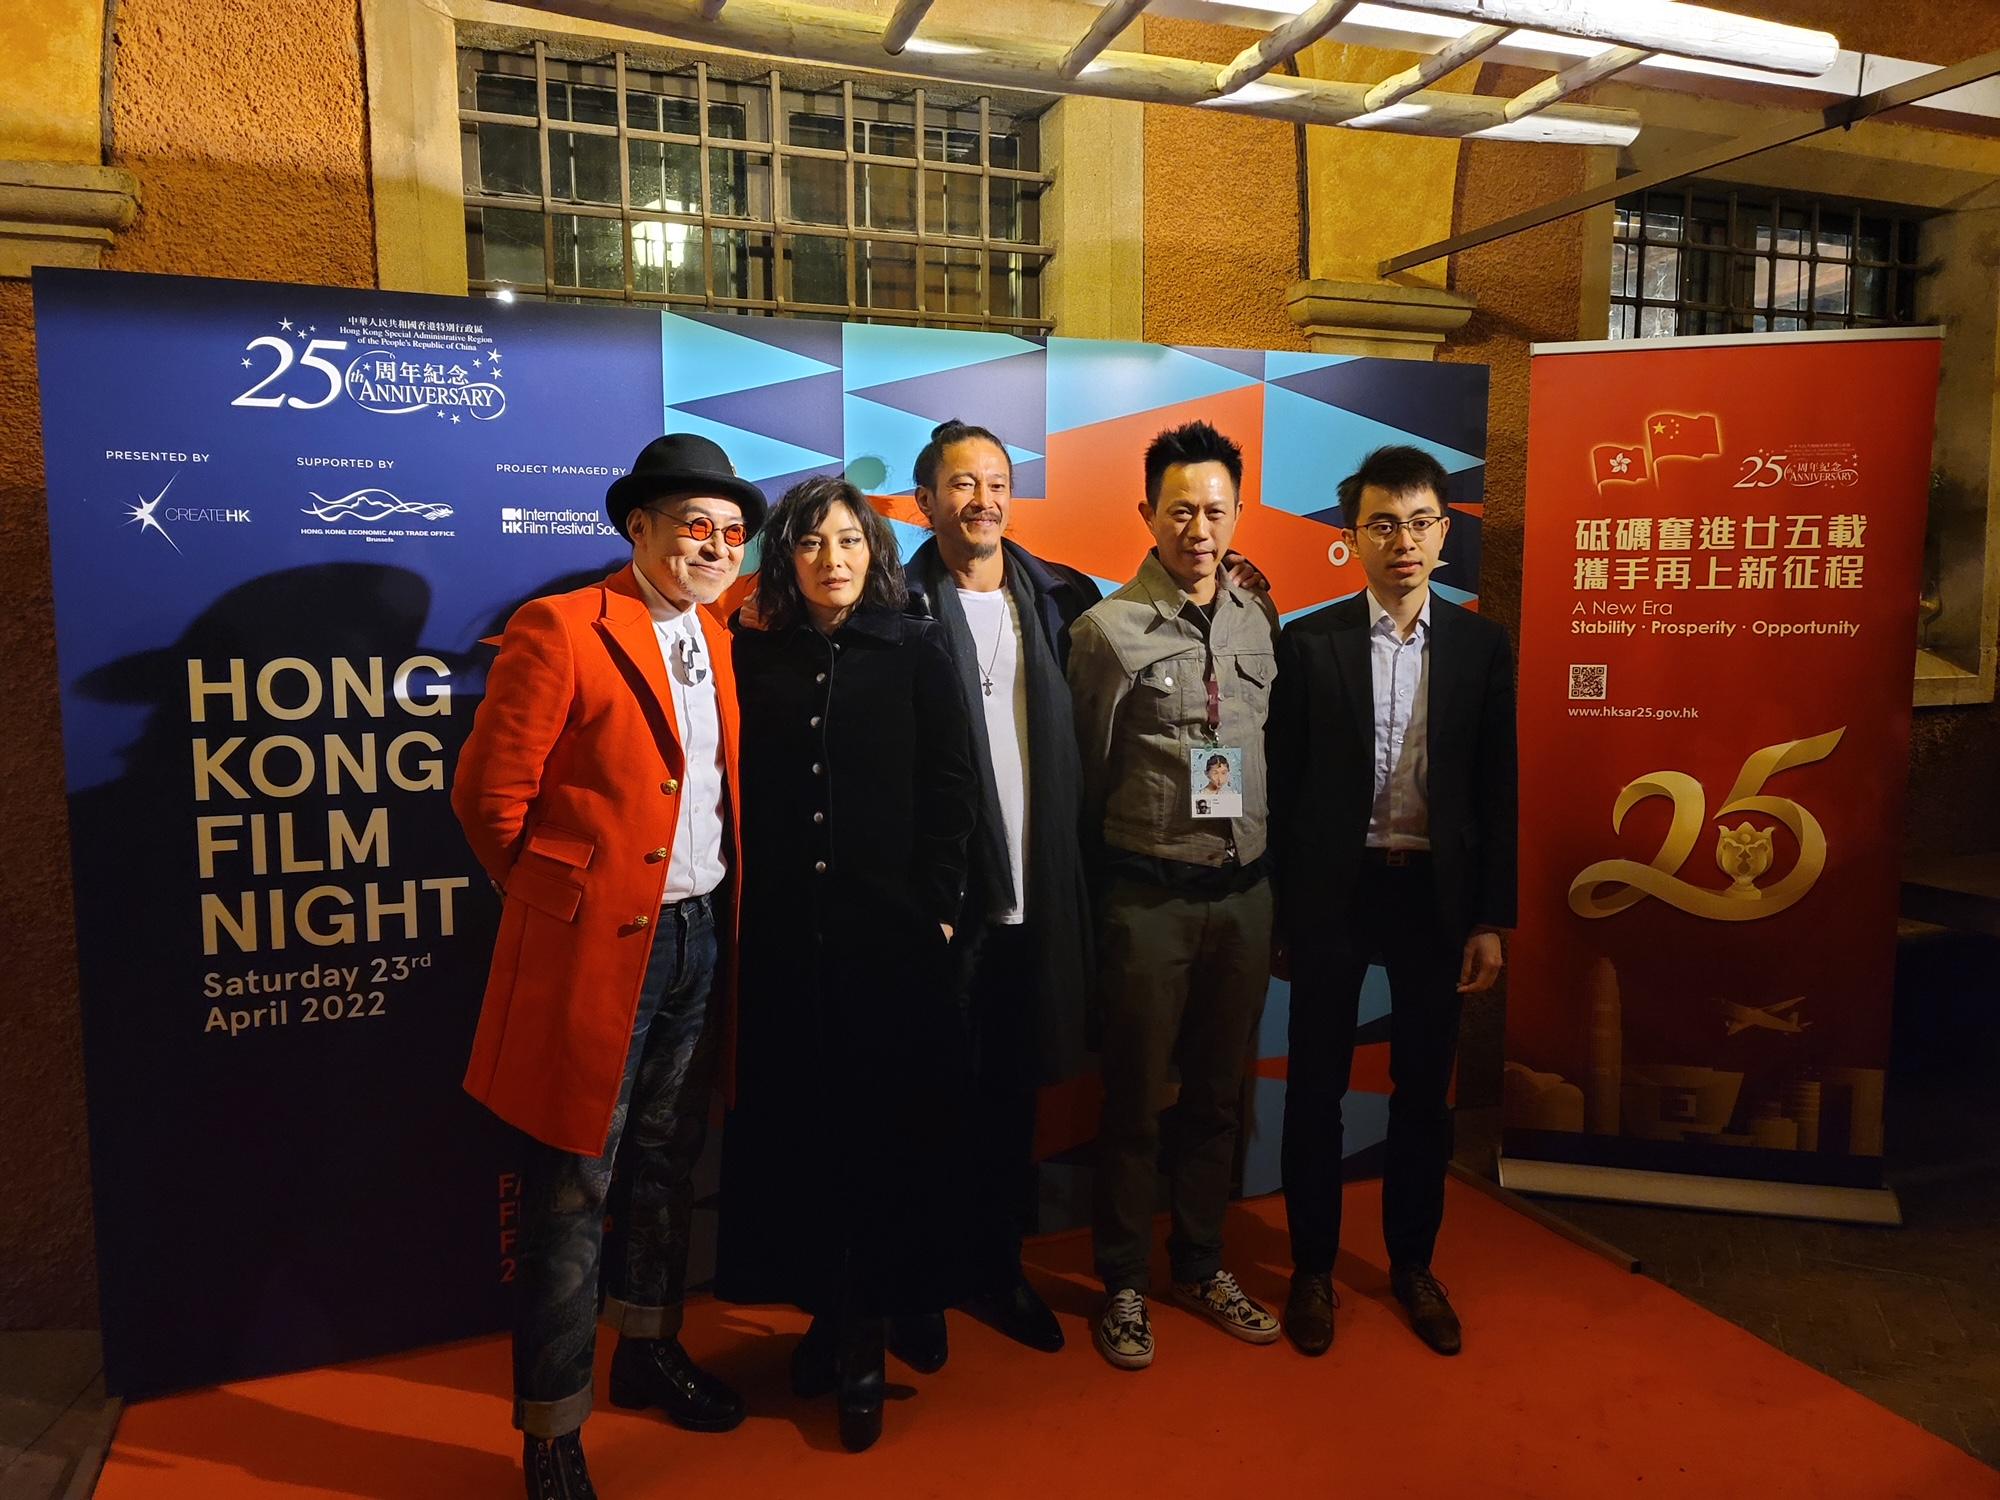 駐布魯塞爾經濟貿易辦事處副代表蔡禧揚（右一） 於四月二十三日（烏迪內時間）在意大利烏迪內舉行的第二十四屆遠東電影節香港電影之夜，與《尋找極致的喜悅：火與冰》導演版的演出及製作團隊合照。該電影為遠東電影節放映的13部香港電影之一。